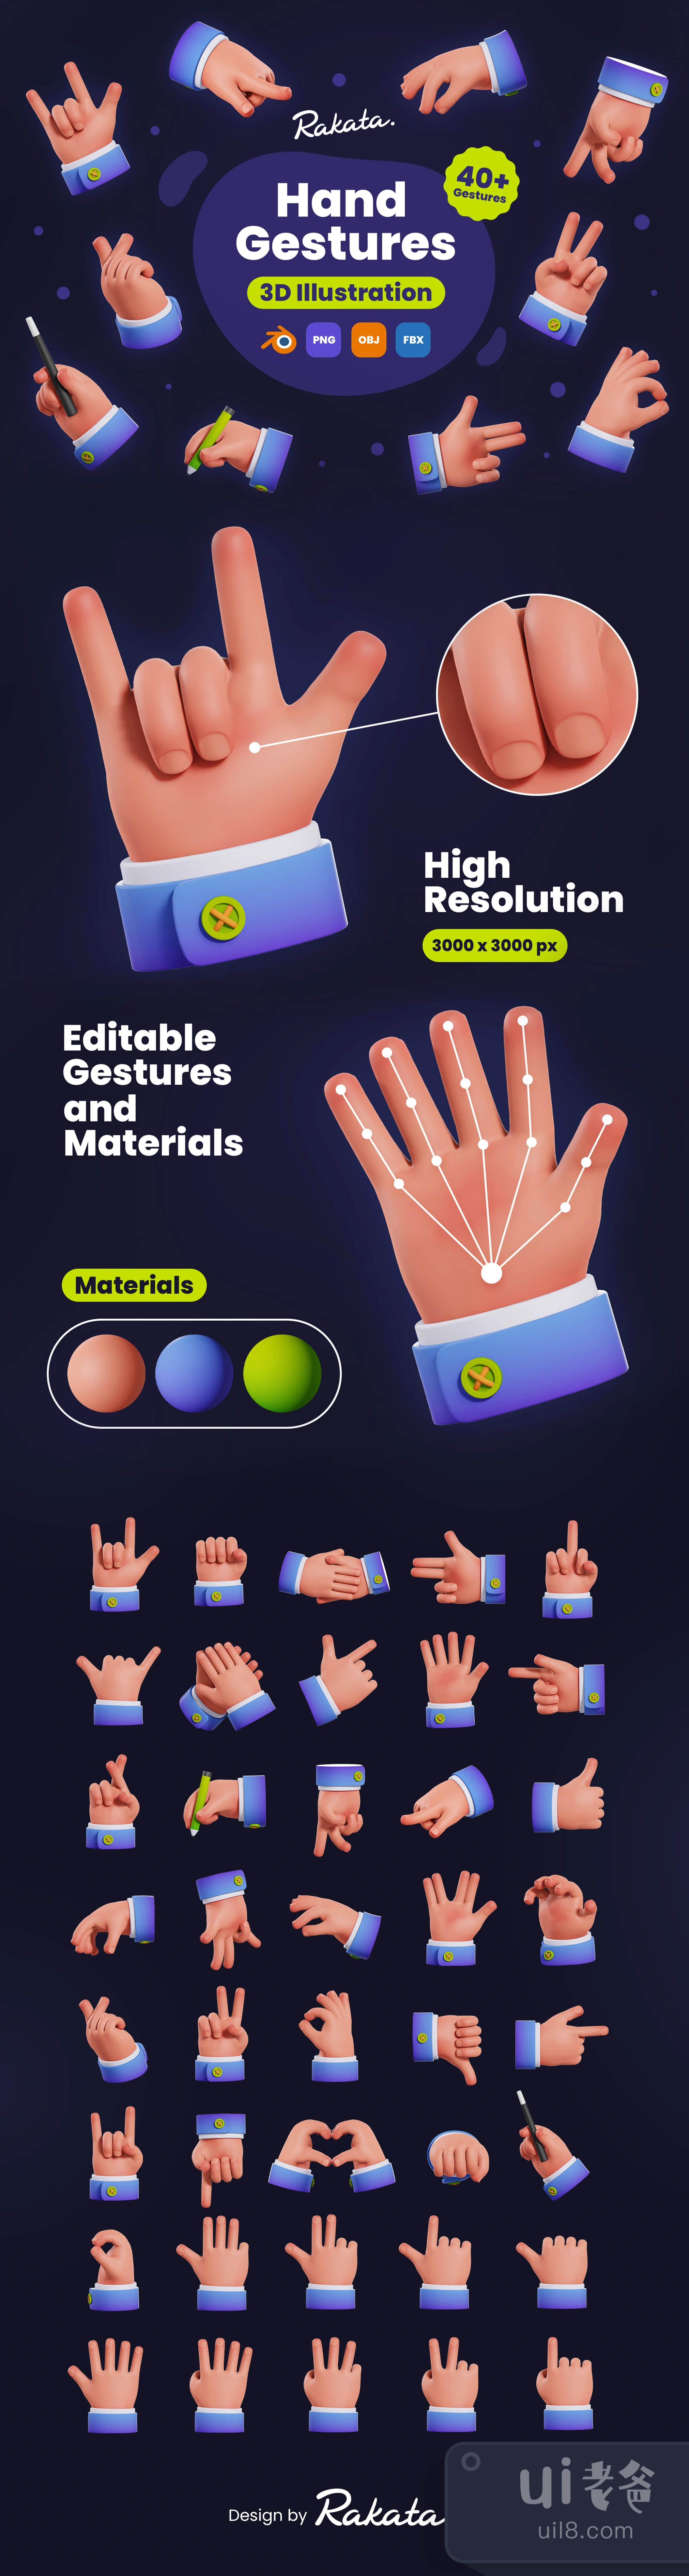 手势3D插图 (Hand Gestures 3D Illustration)插图